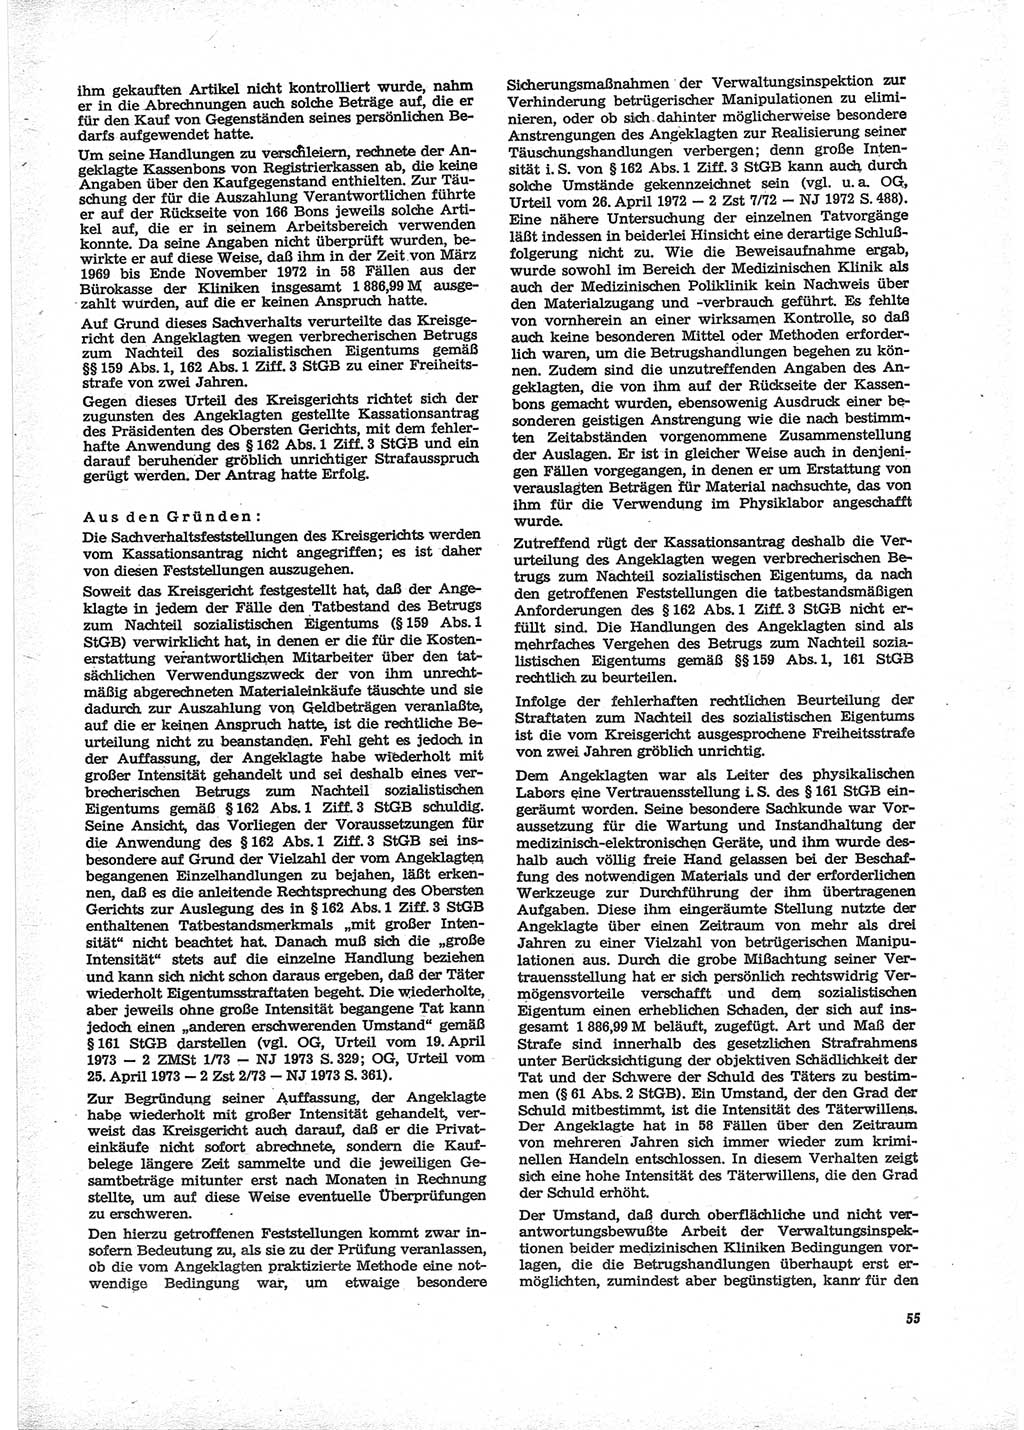 Neue Justiz (NJ), Zeitschrift für Recht und Rechtswissenschaft [Deutsche Demokratische Republik (DDR)], 28. Jahrgang 1974, Seite 55 (NJ DDR 1974, S. 55)